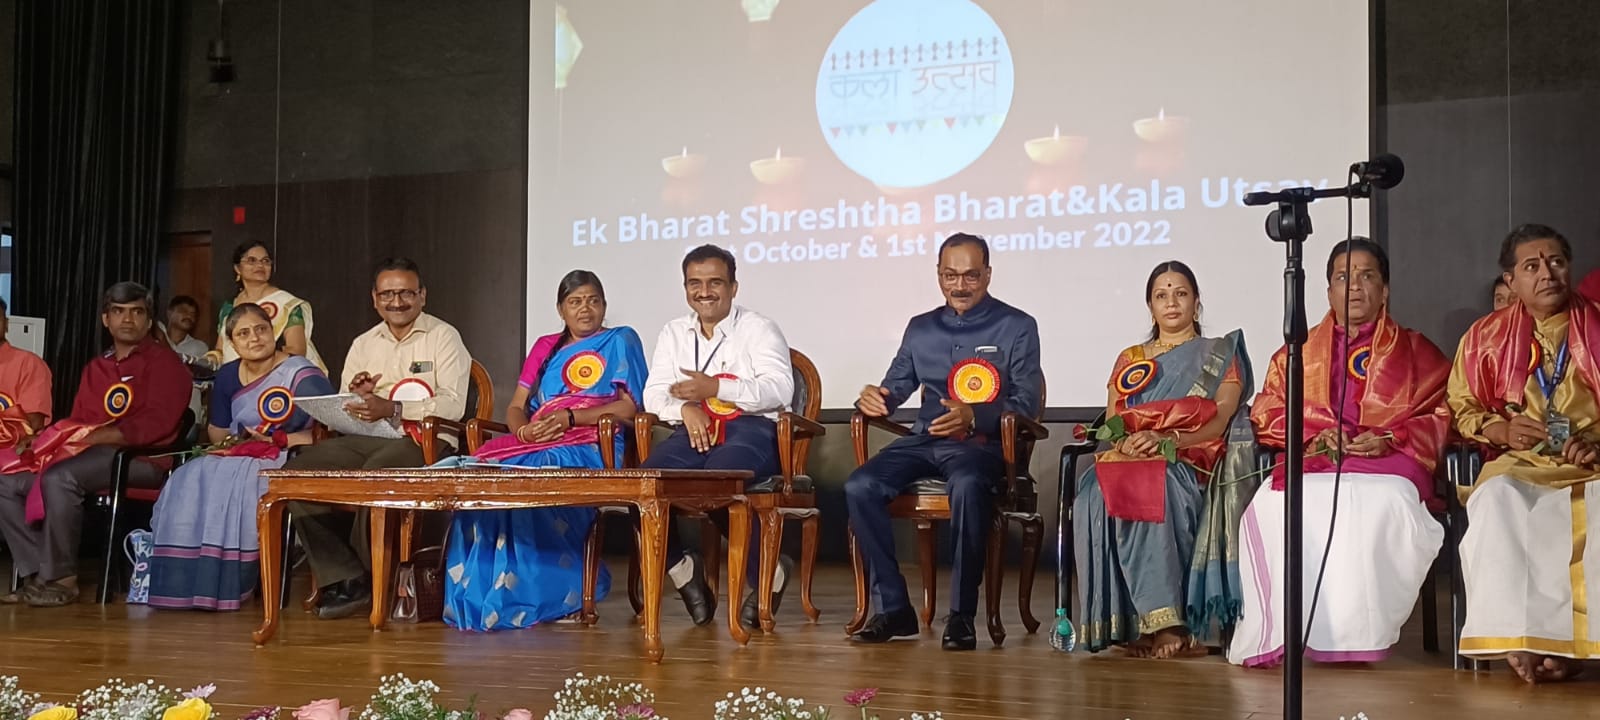 “एक भारत श्रेष्ठ भारत कला उत्सव” का संभागीय स्तर पर आयोजन किया गया